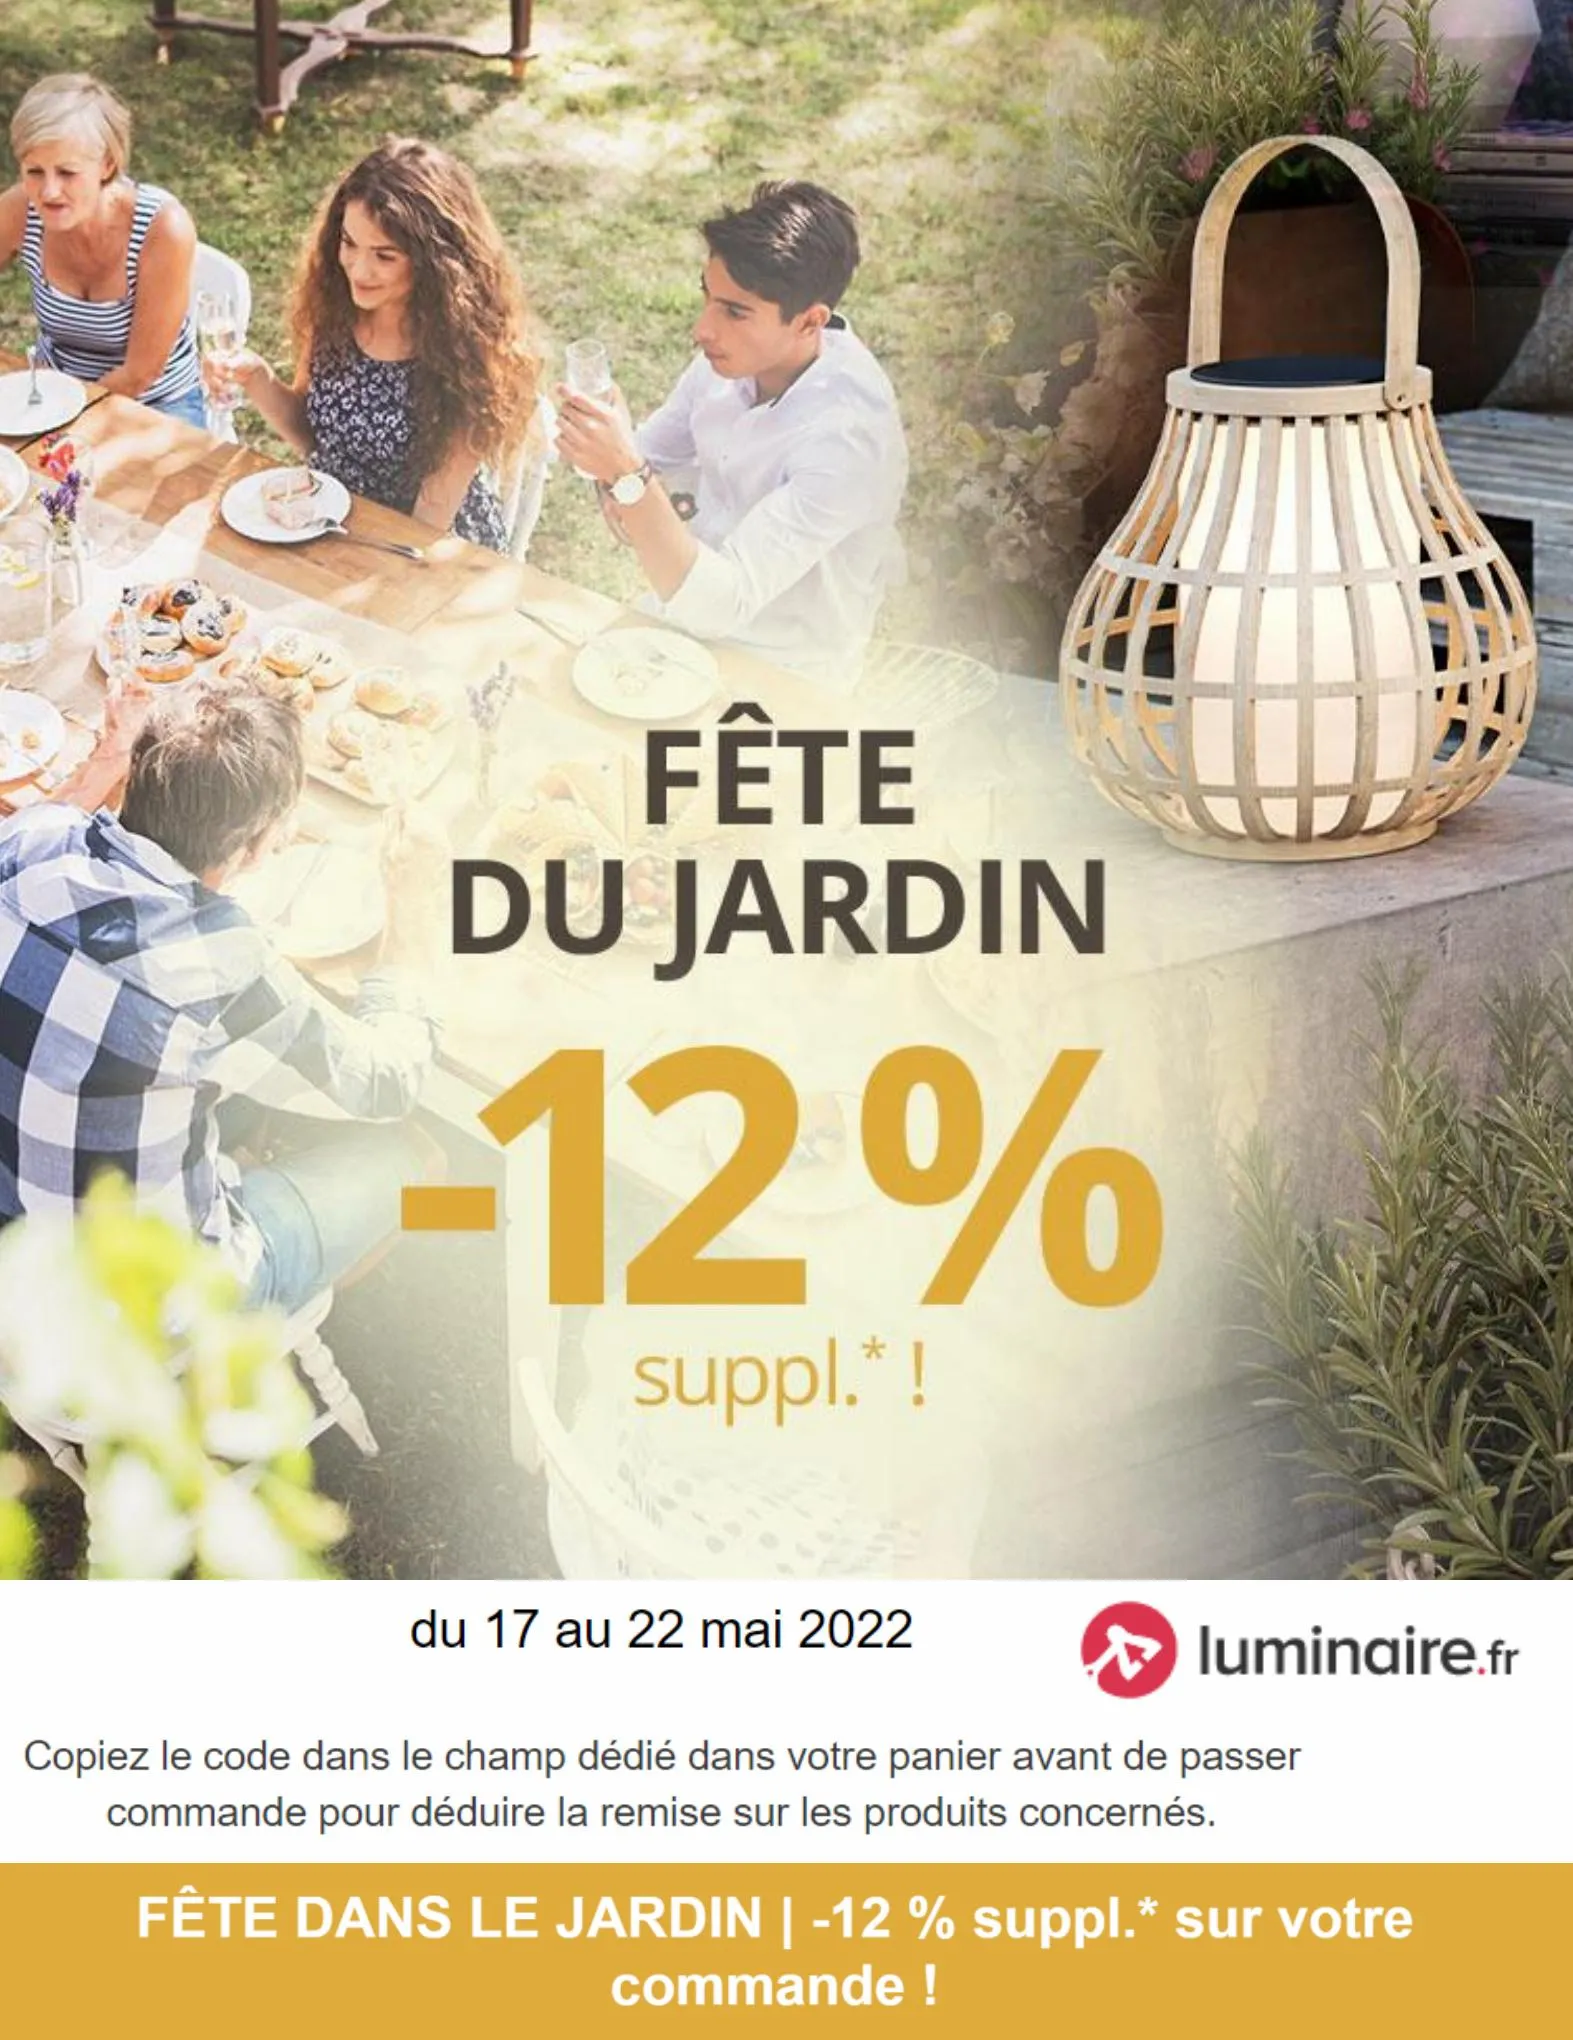 Catalogue Fête du Jardin -12% suppl.!*, page 00001